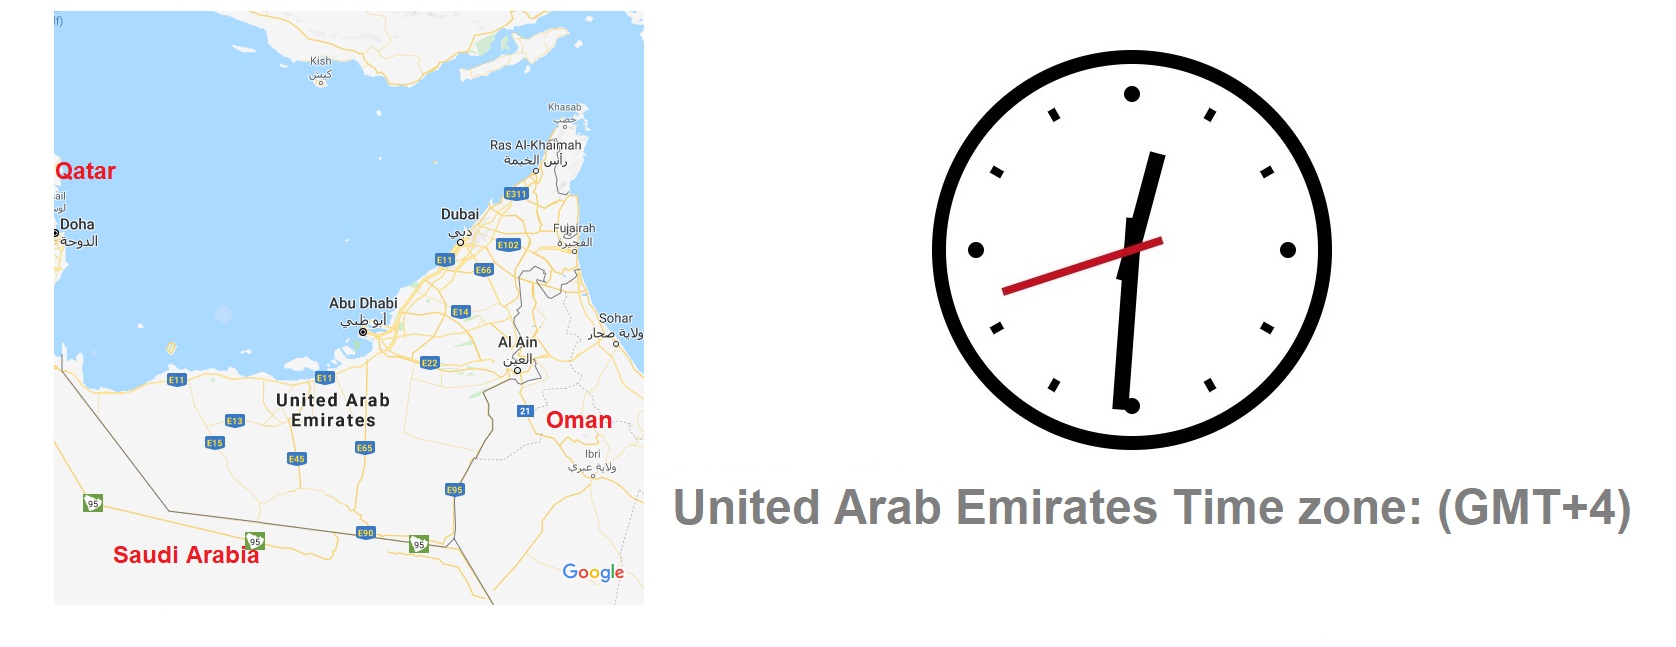 United Arab Emirates Time Zone